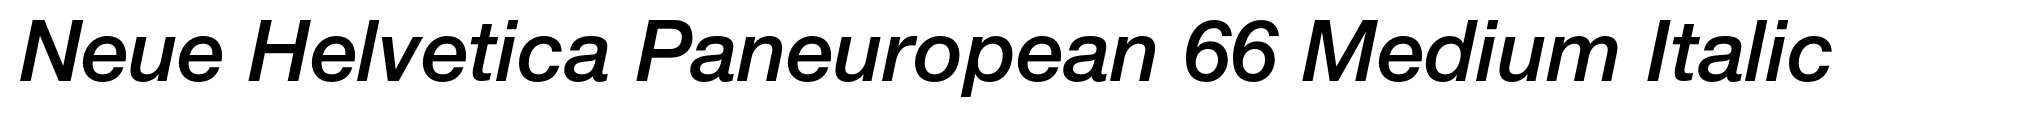 Neue Helvetica Paneuropean 66 Medium Italic image